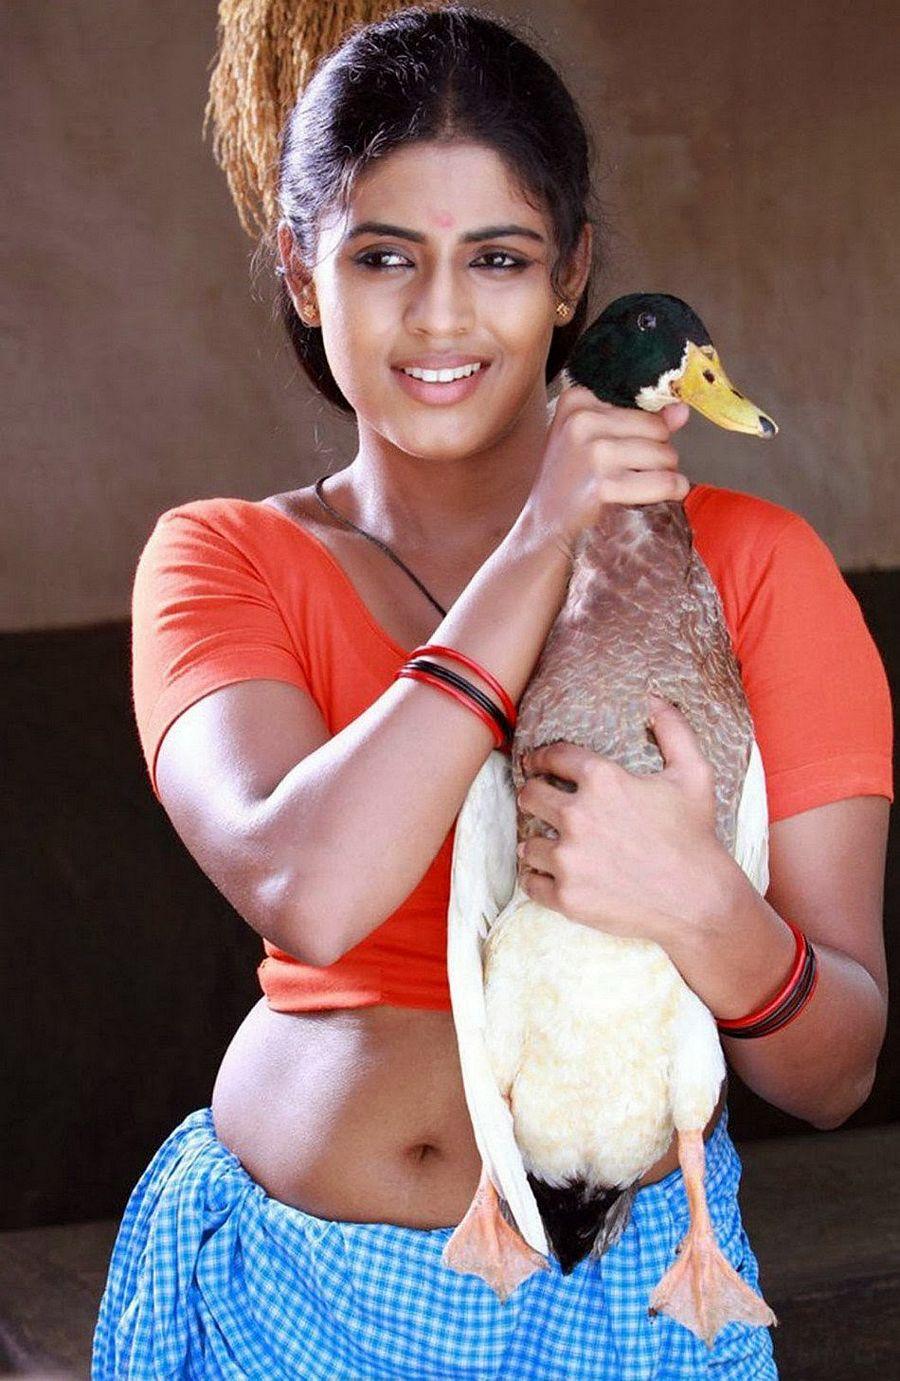 South Indian Actress Iniya Hot Latest Photos